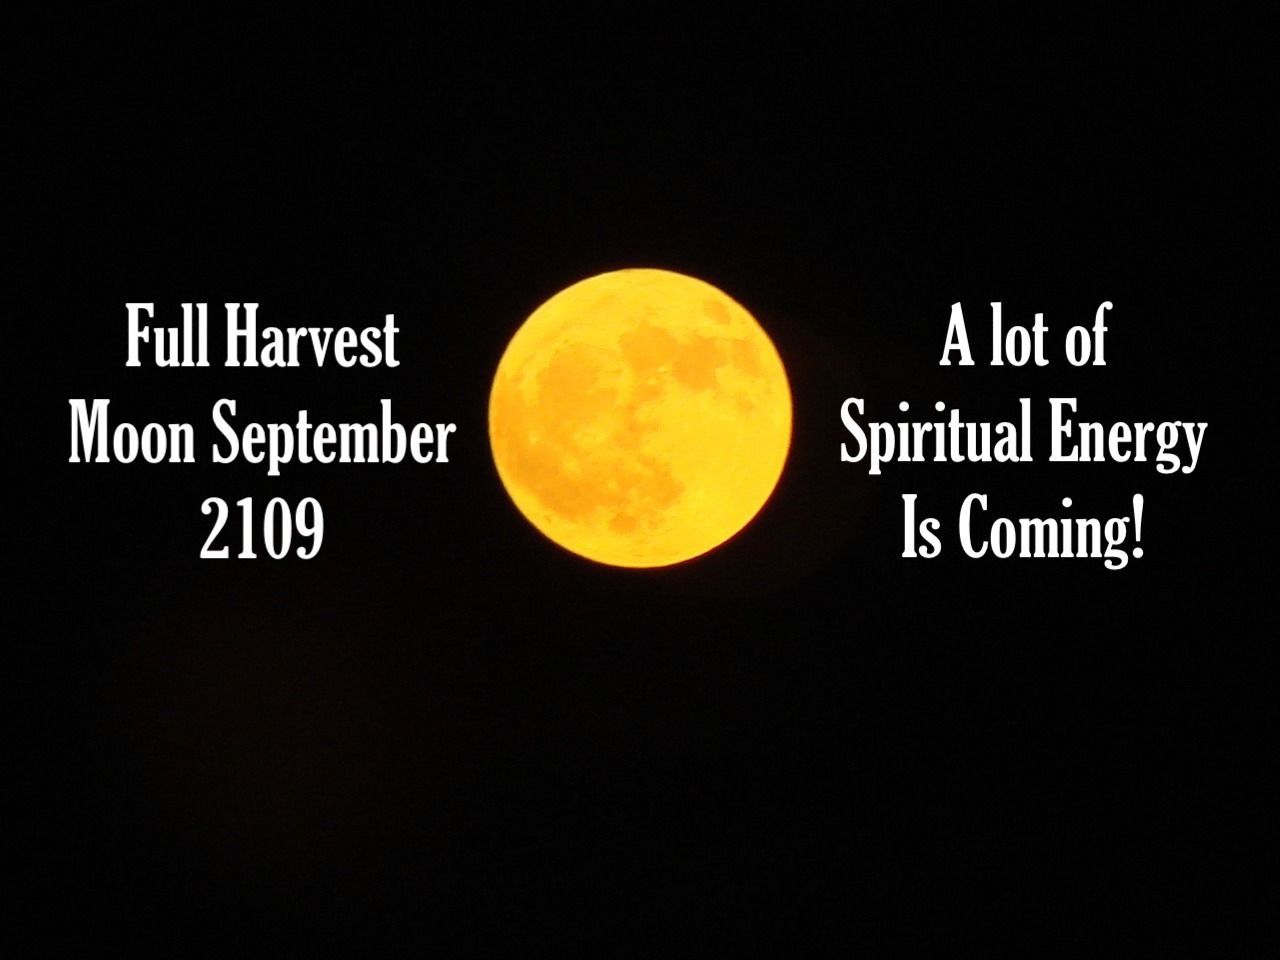 Full Harvest Moon September 2019: Spiritual Energy is Coming!